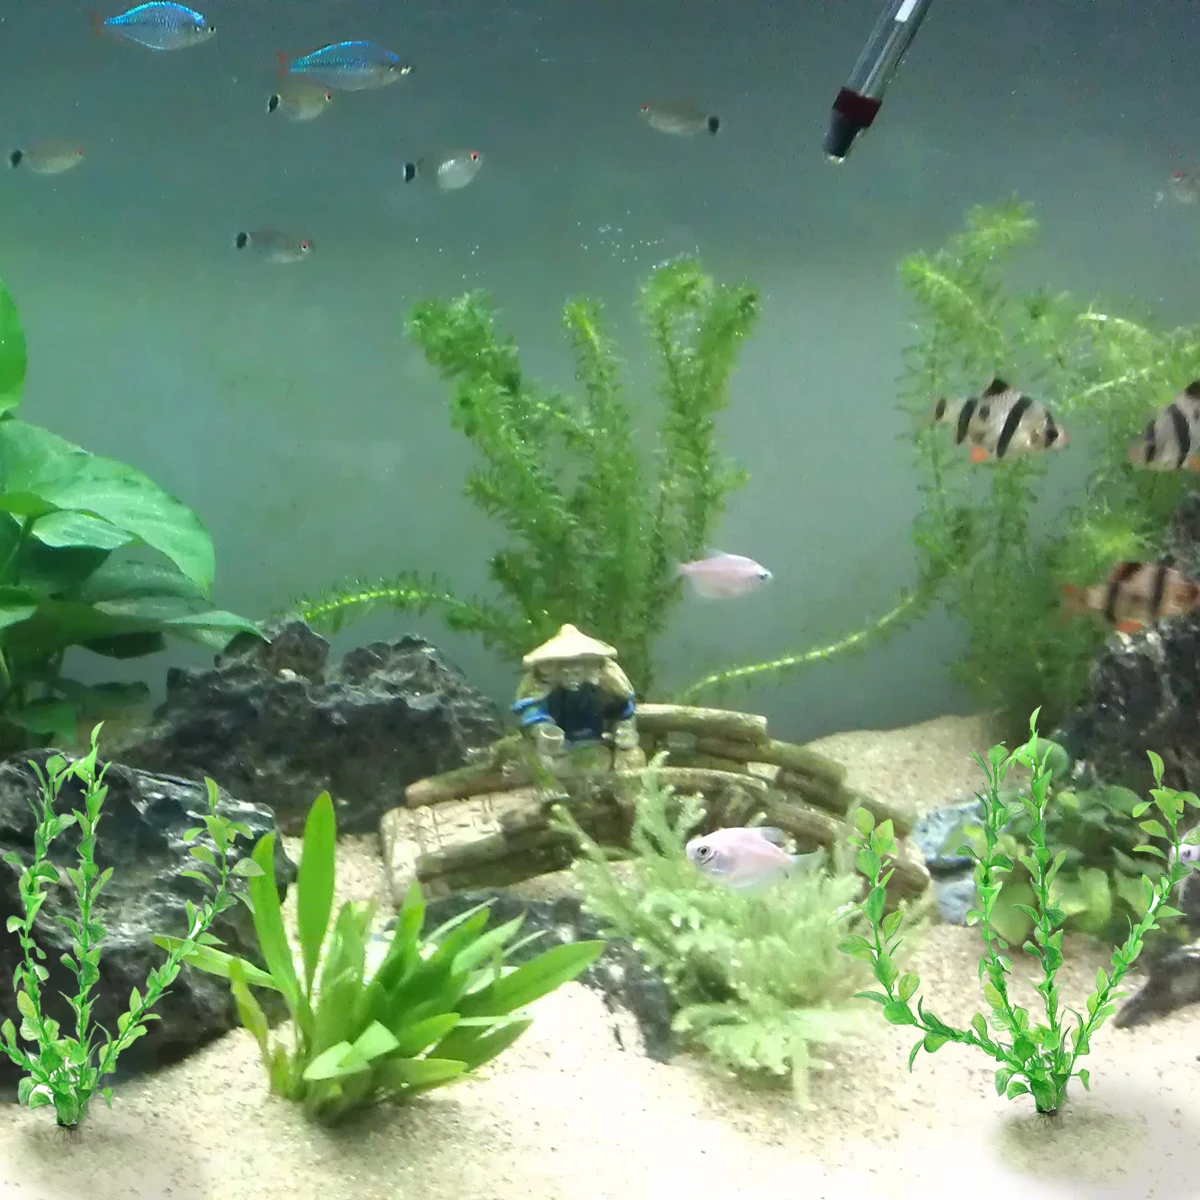 

Аквариумные рыбки зеленые пластиковые искусственные растения высотой 25 см пластиковое растение для аквариума 1 шт.